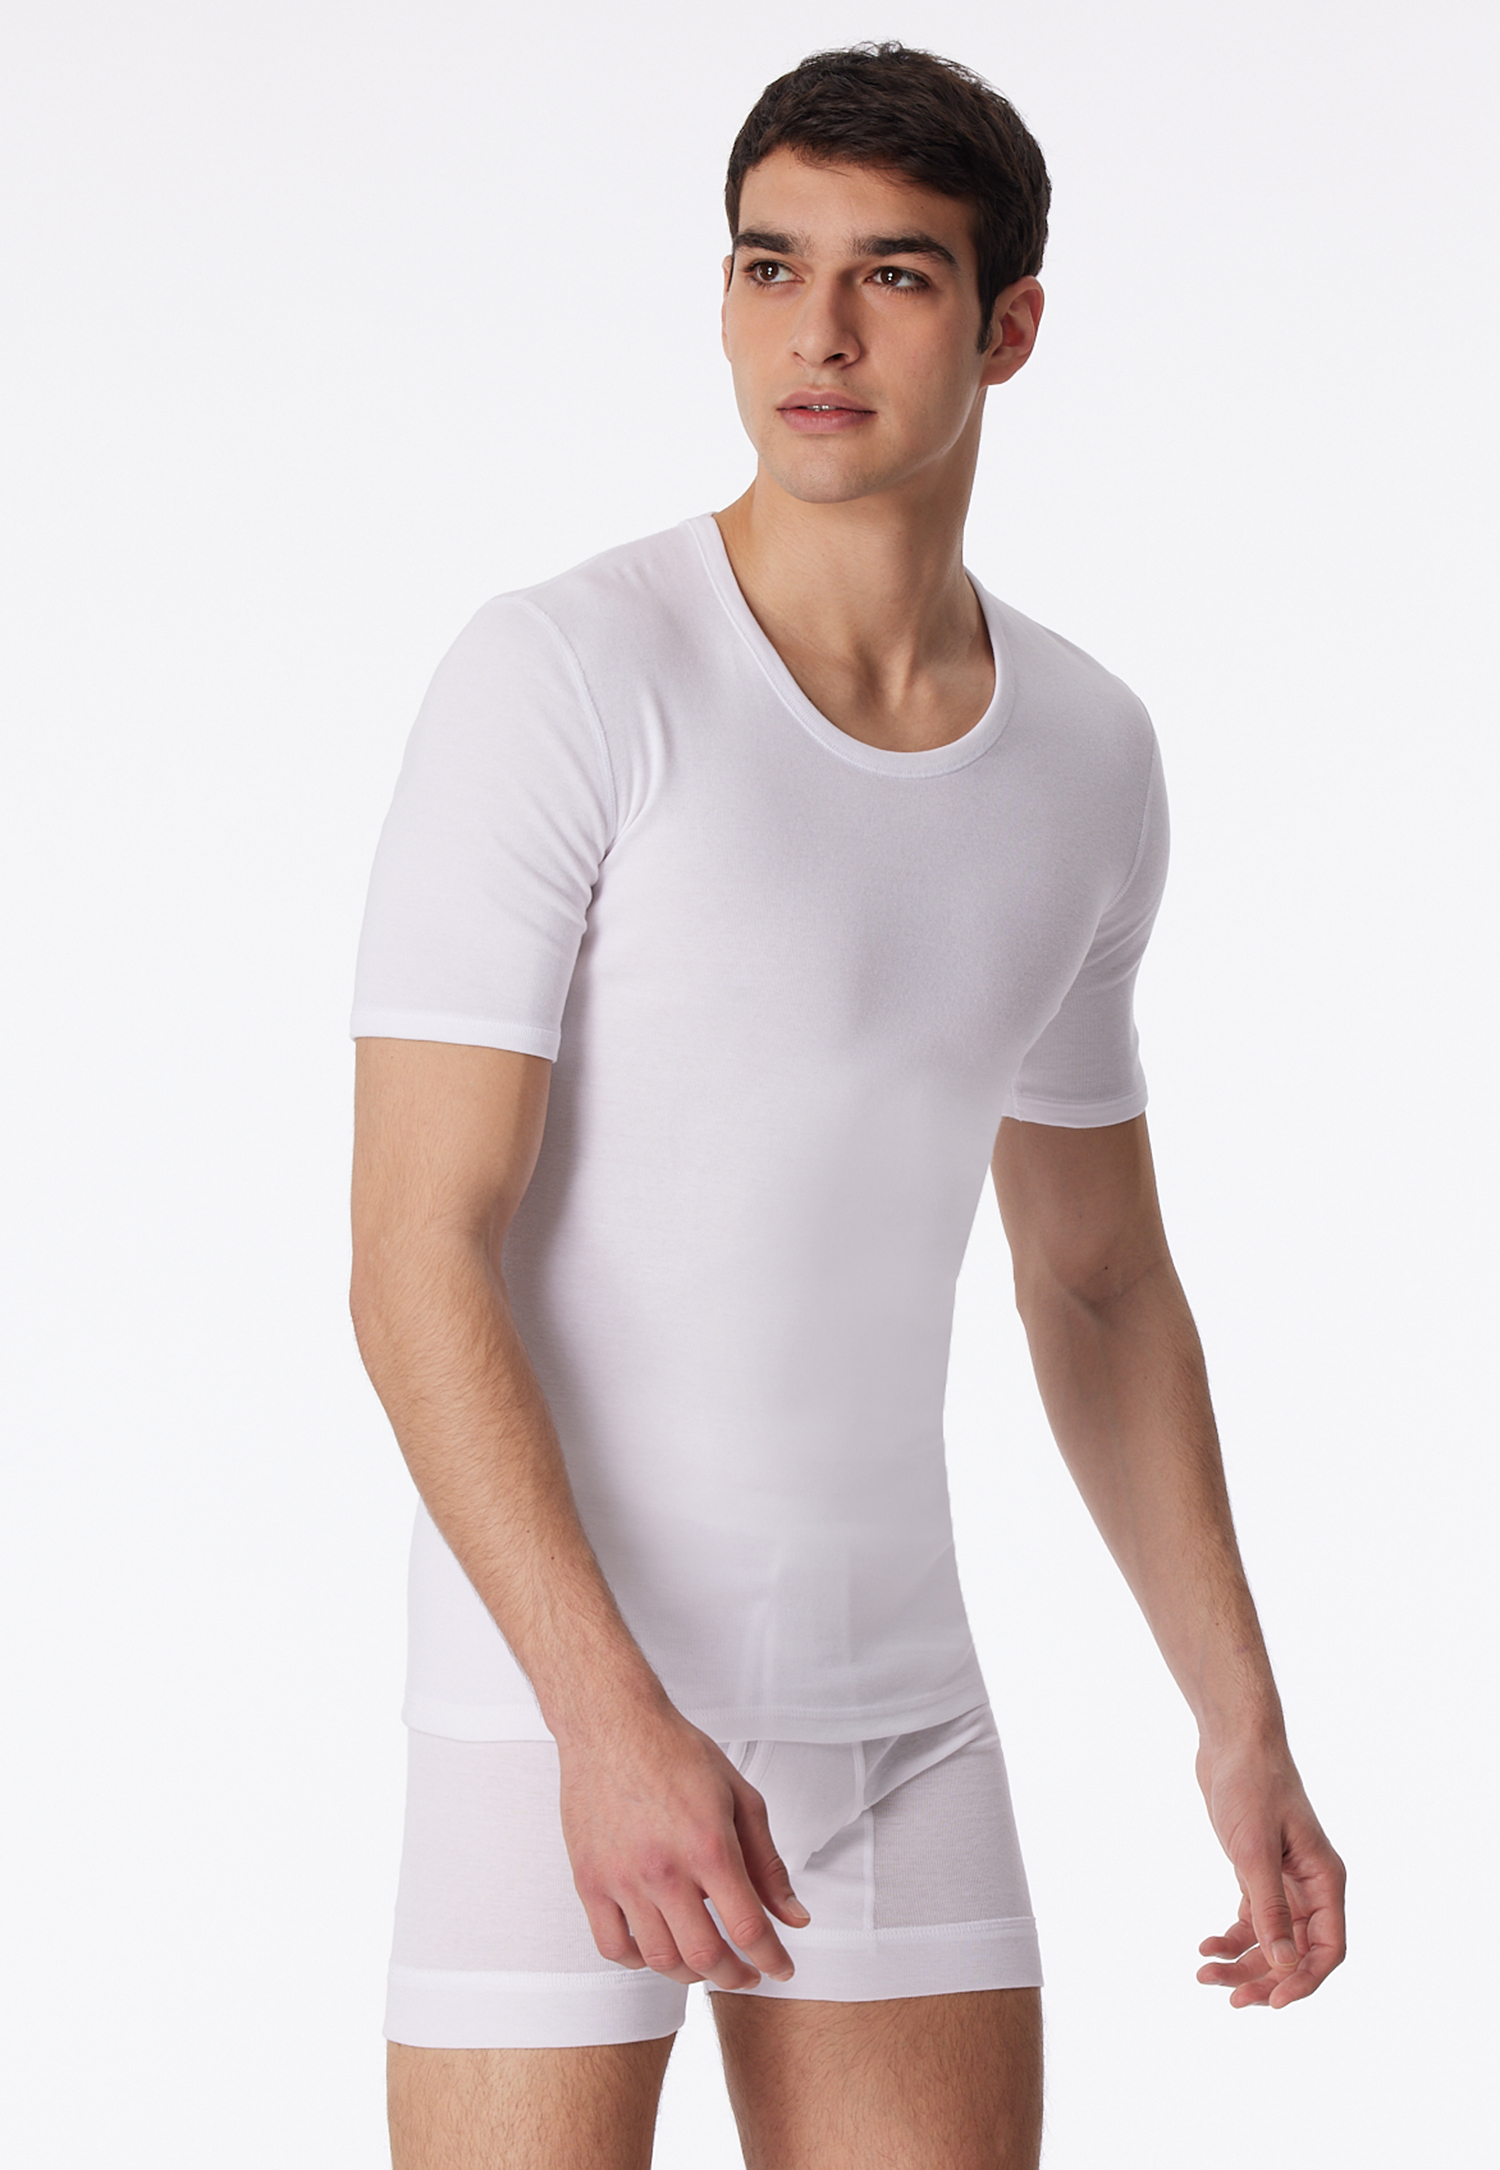 Shirt kurzarm weiß - Essentials Feinripp 5 von Schiesser